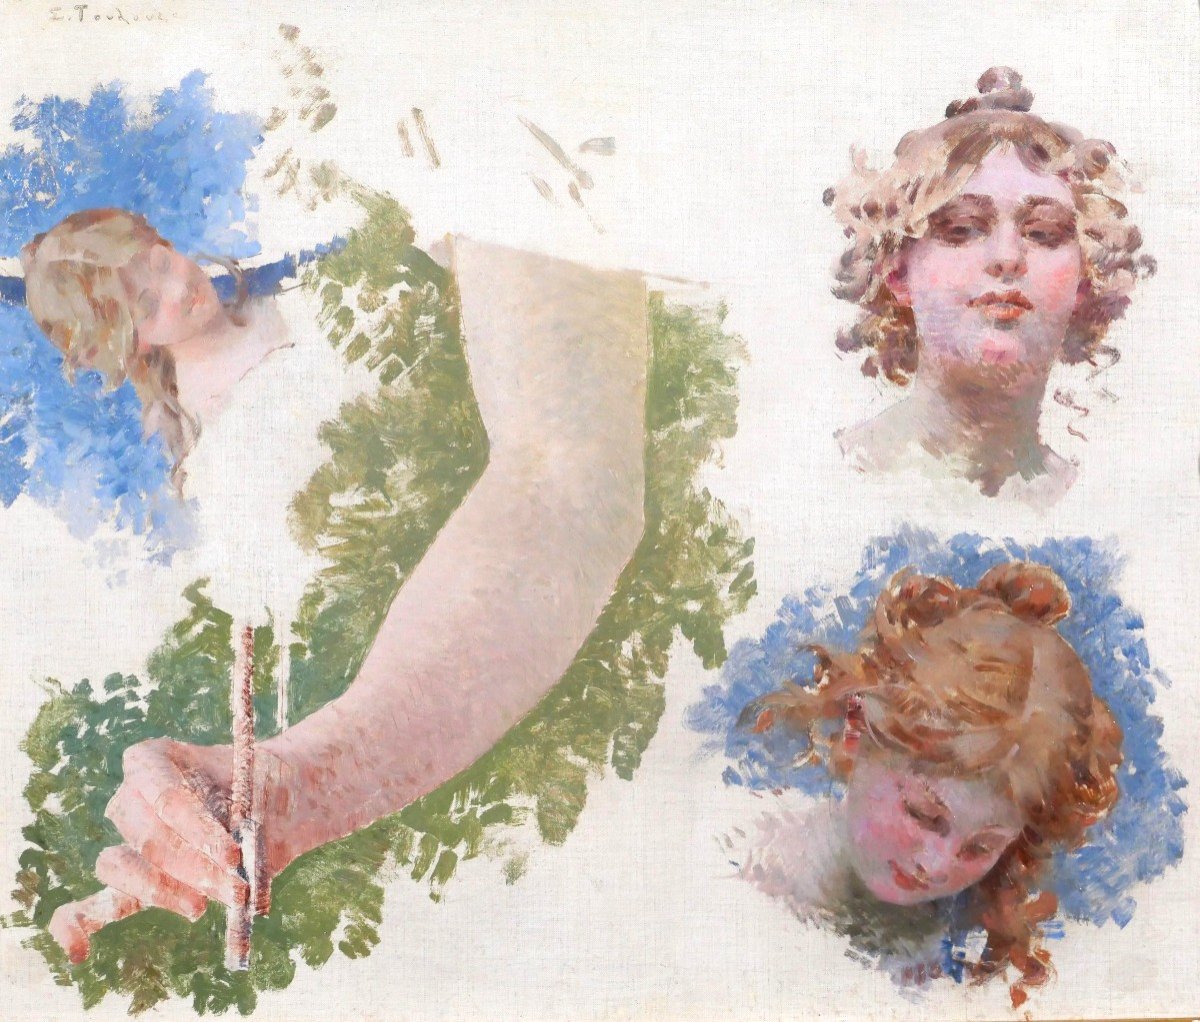 Edouard TOUDOUZE 1848-1907 Etude pour la musique, Opéra Comique, Paris, tableau, 1895-98